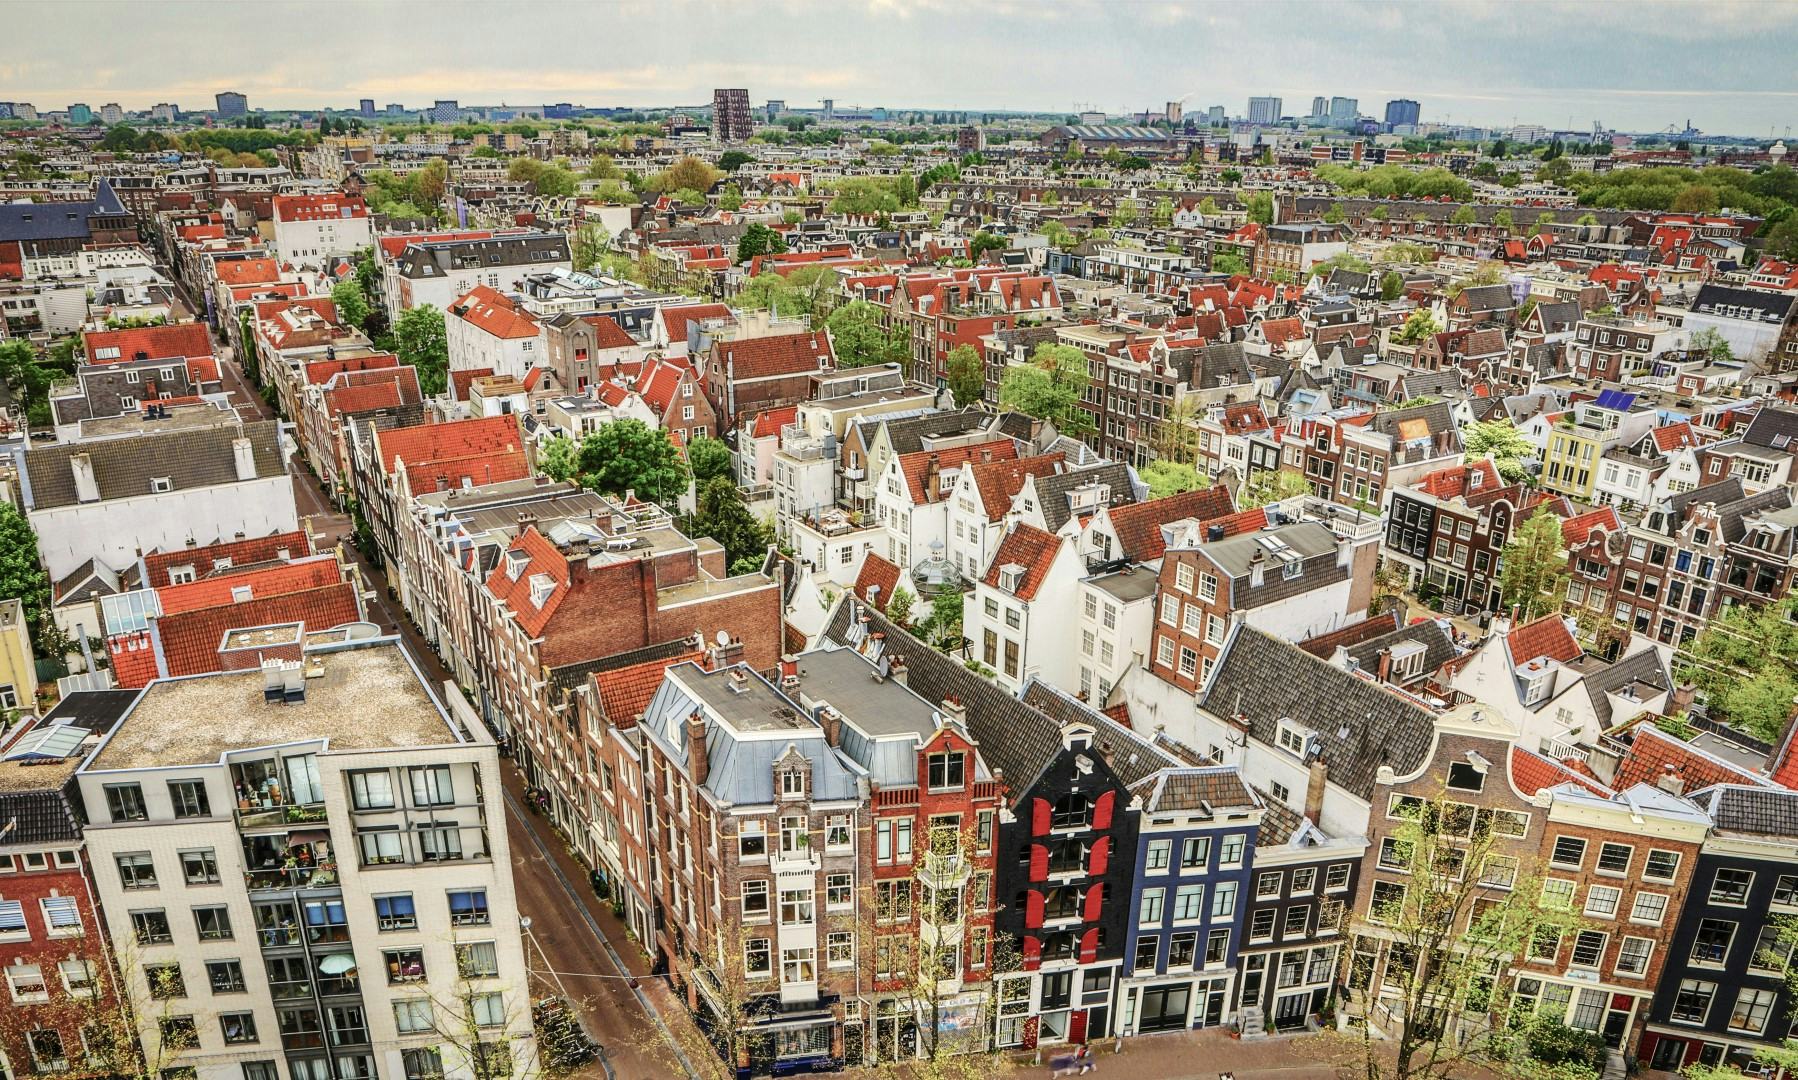 Amsterdam meest aantrekkelijke stad, Emmen helemaal onderaan